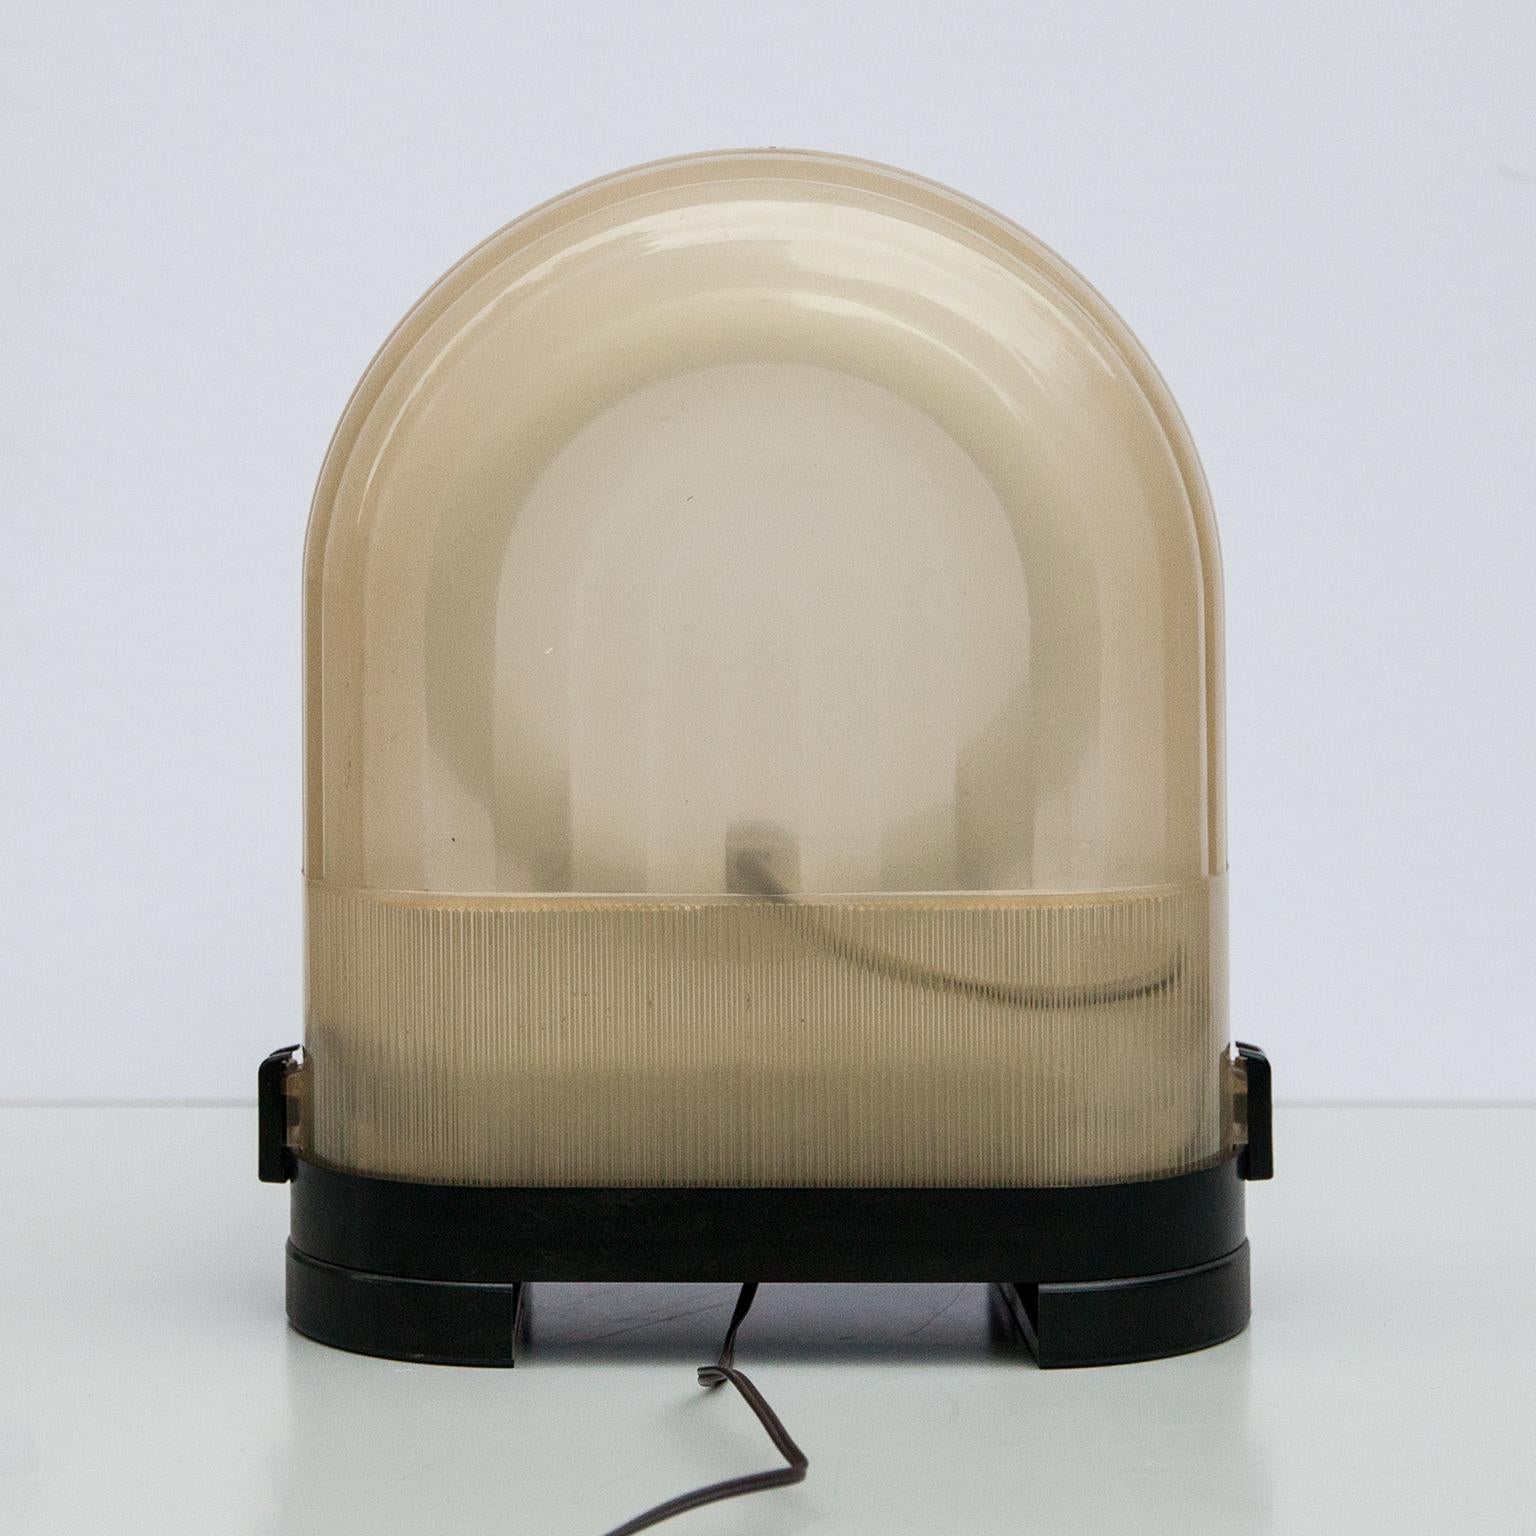 Italian Neon Table Lamp Ciaro by Zerbetto Italy 1975 For Sale 2